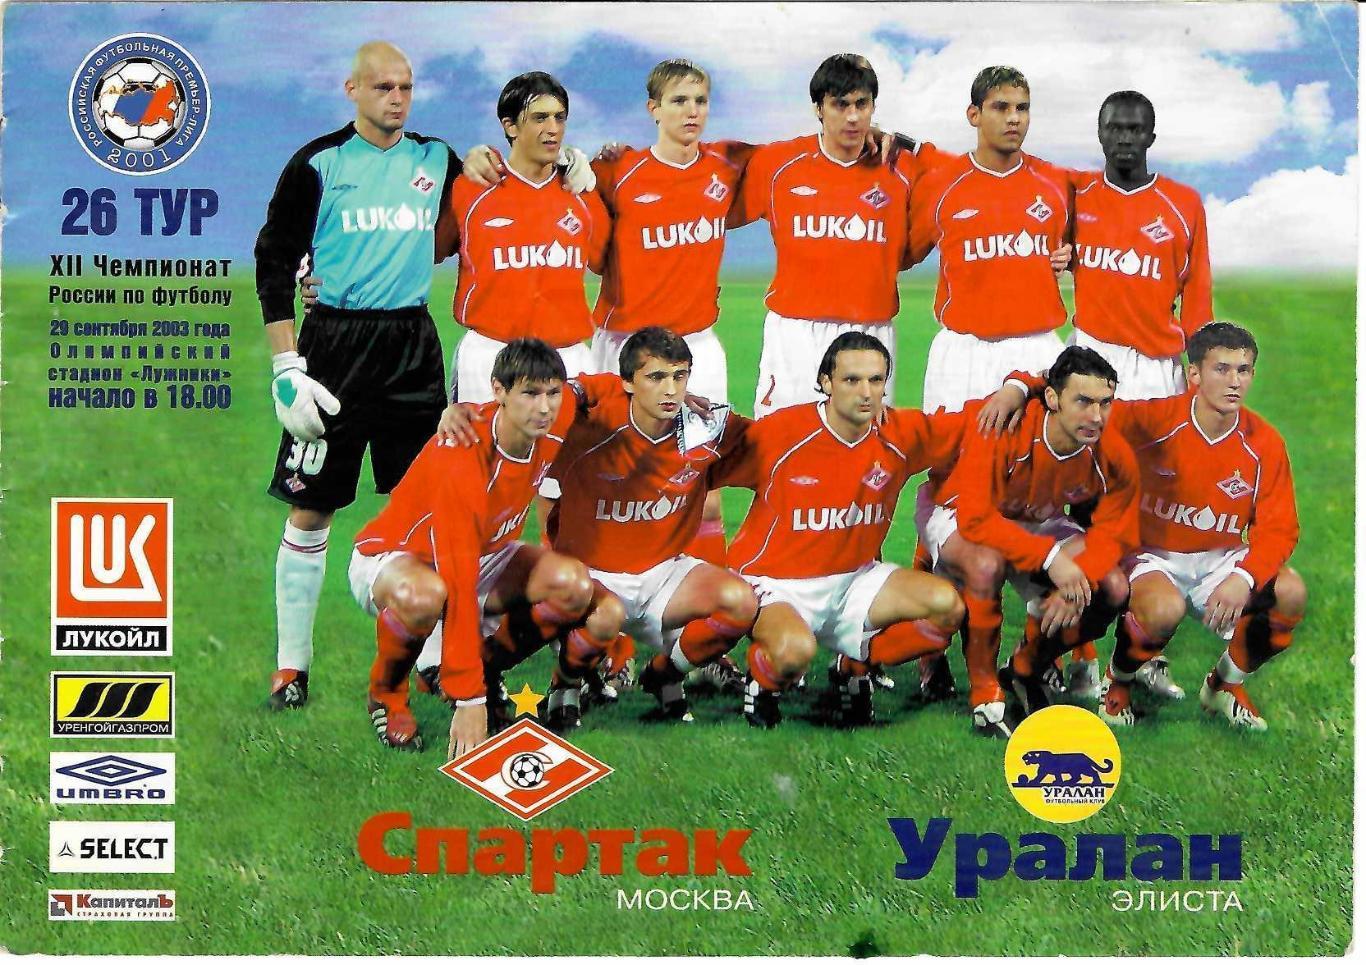 Спартак Москва - Уралан Элиста - 29.09.2003